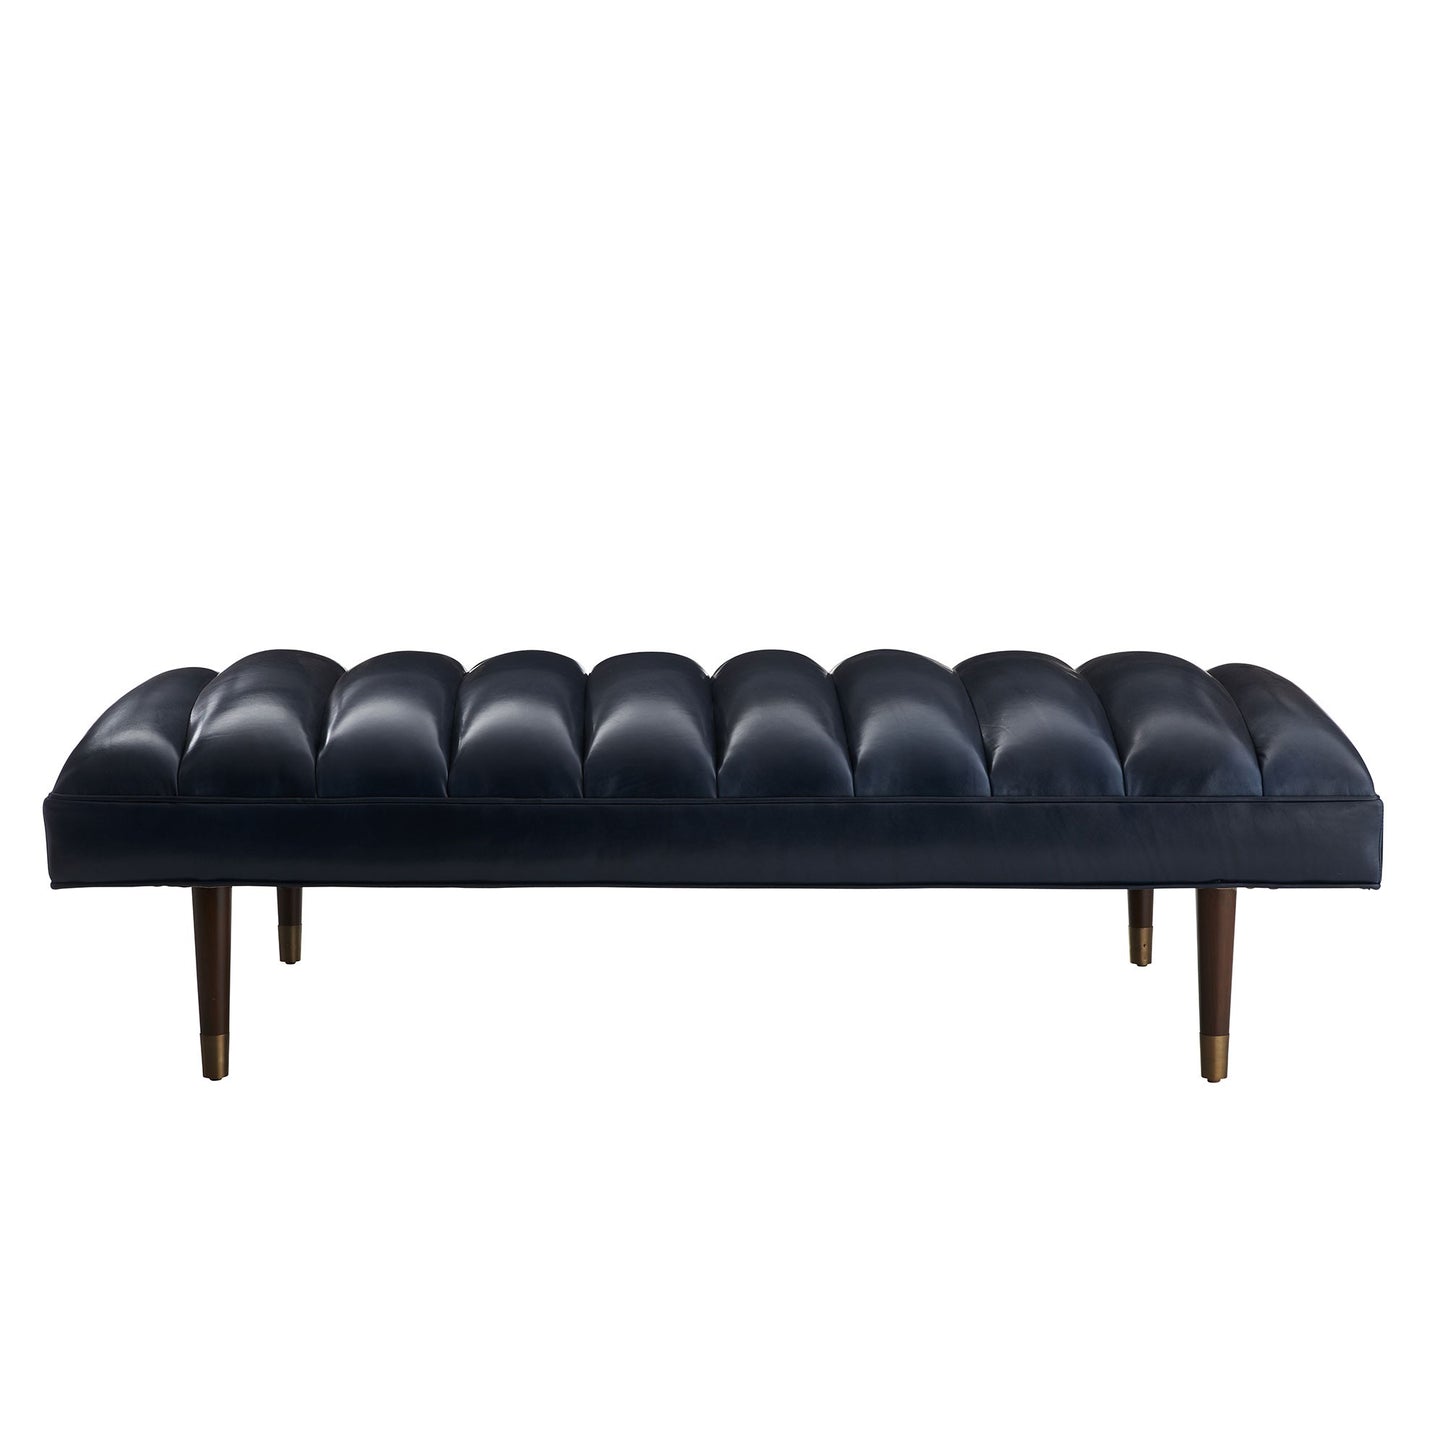 Indigo Leather Christophe Bench with Dark Walnut Finish - Stylish Seating Solution